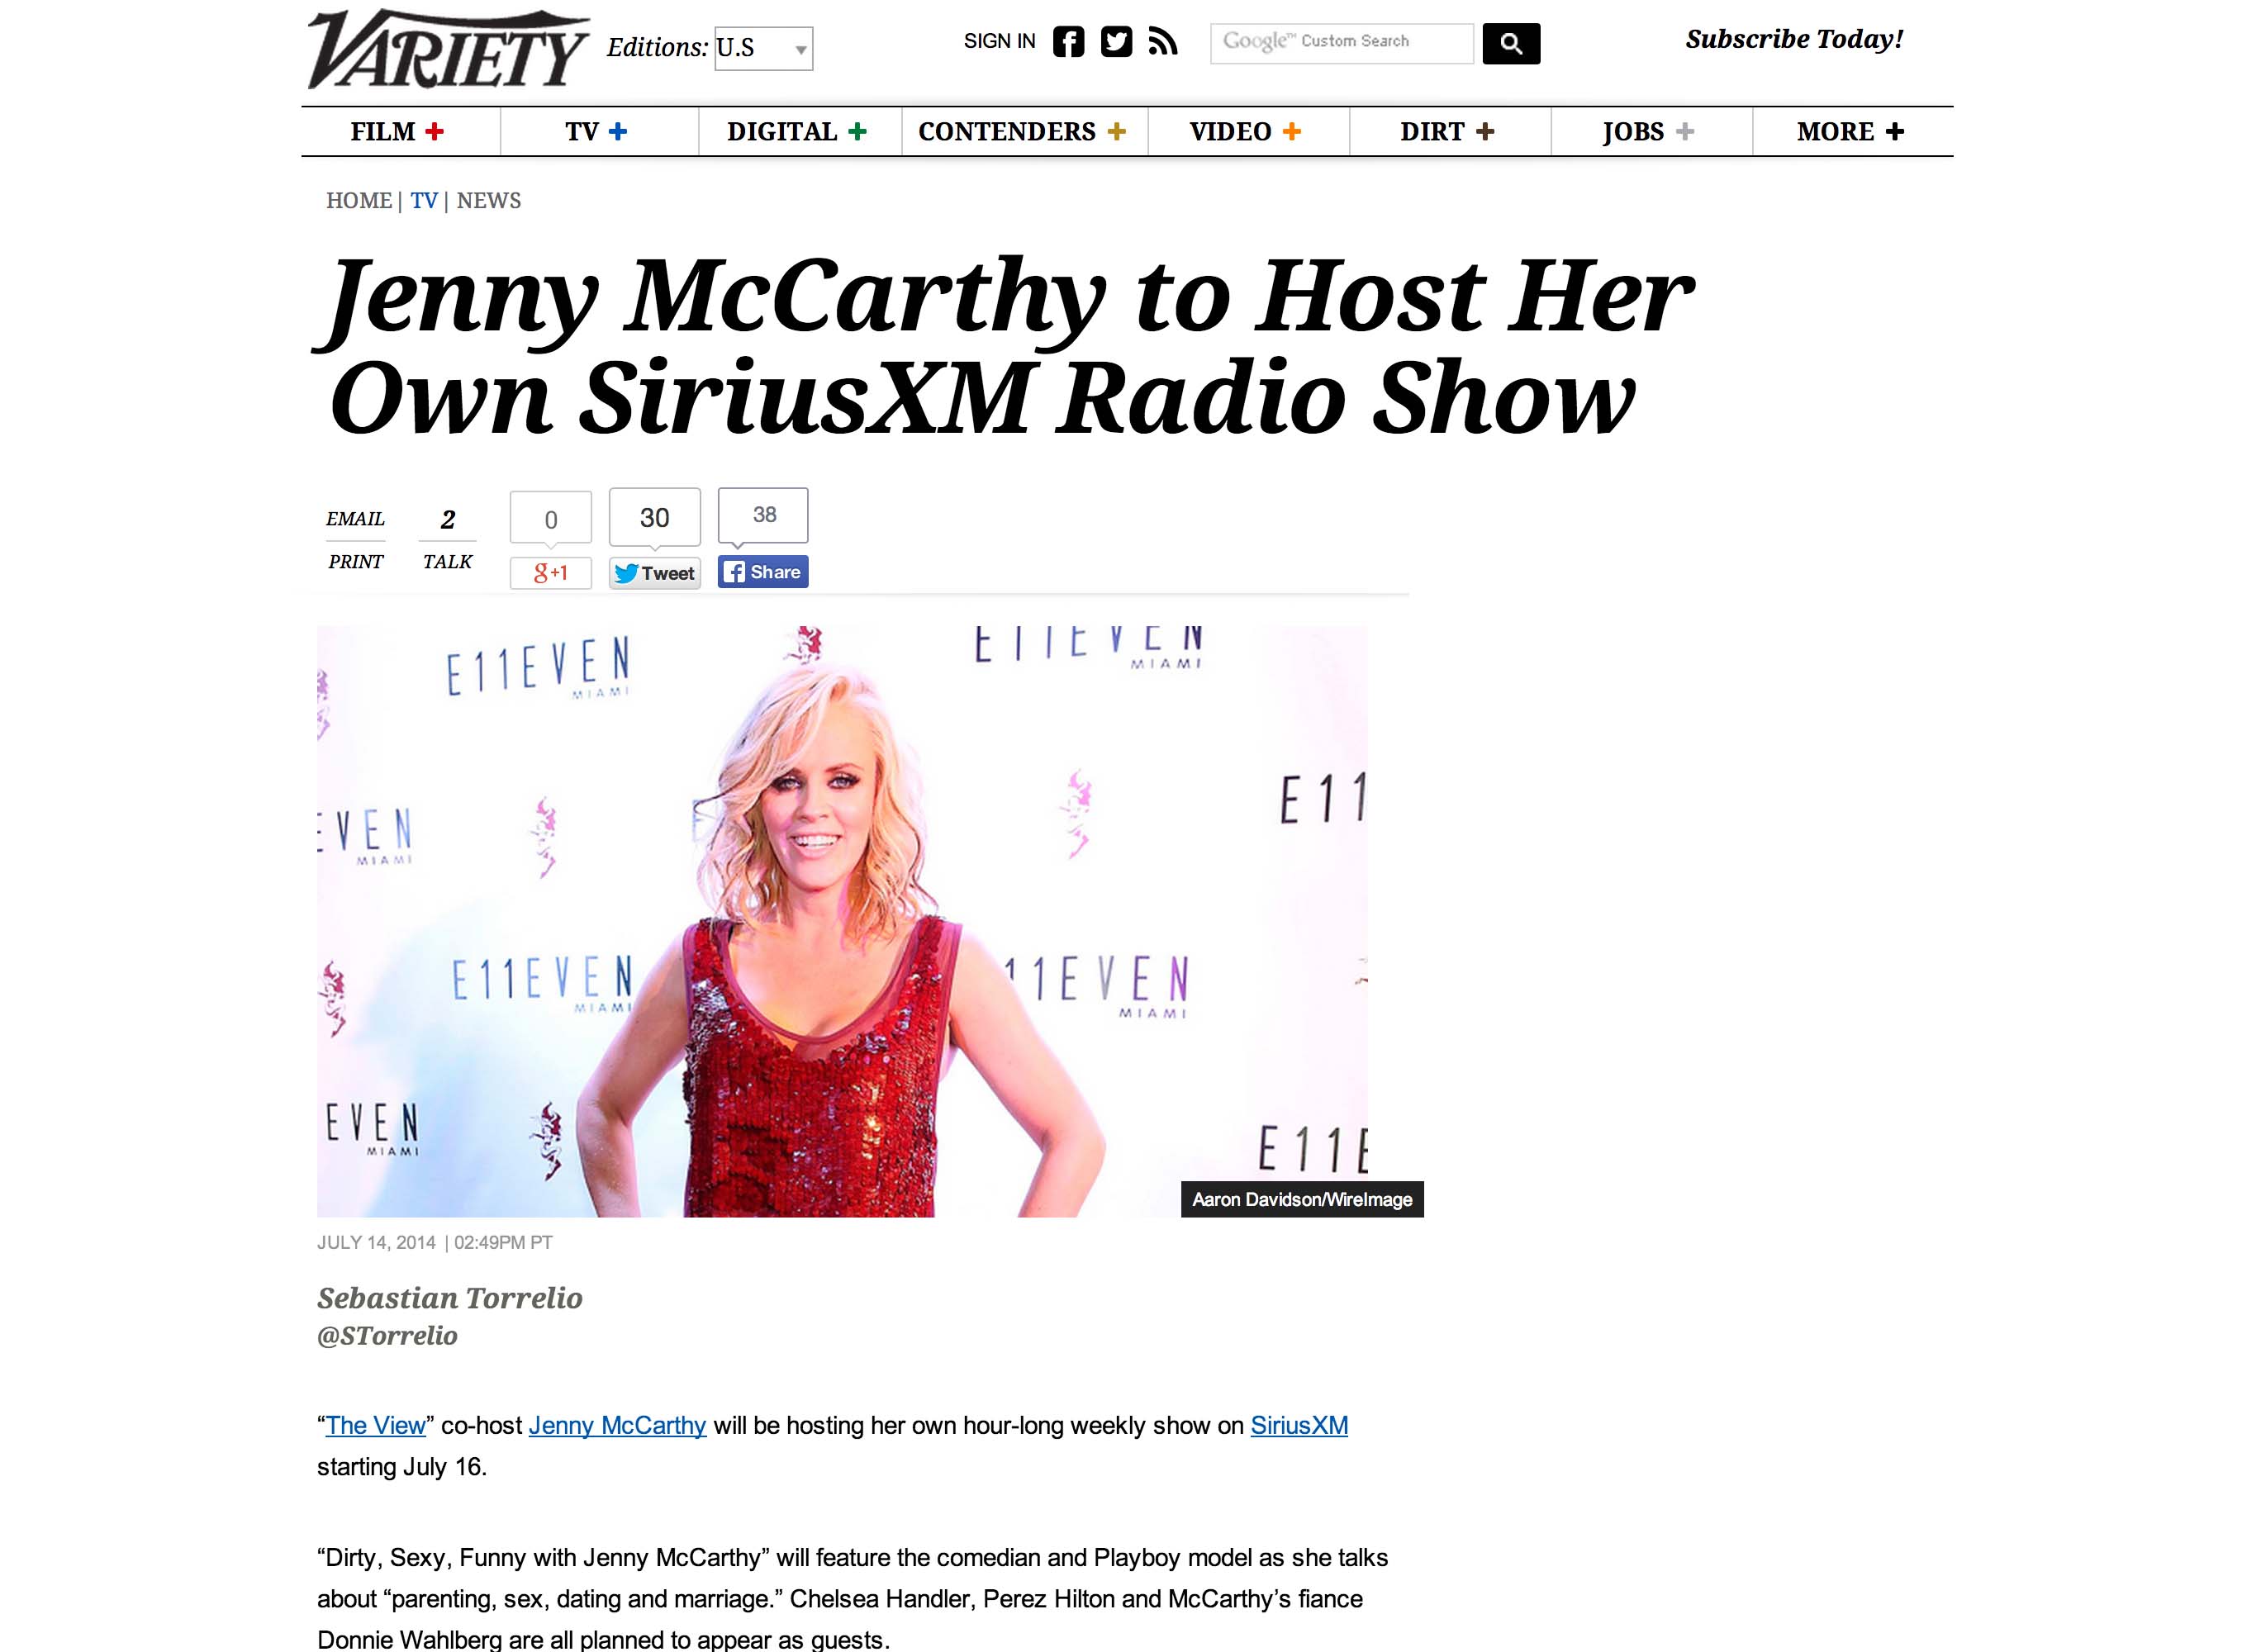 Jenny McCarthy Variety miami